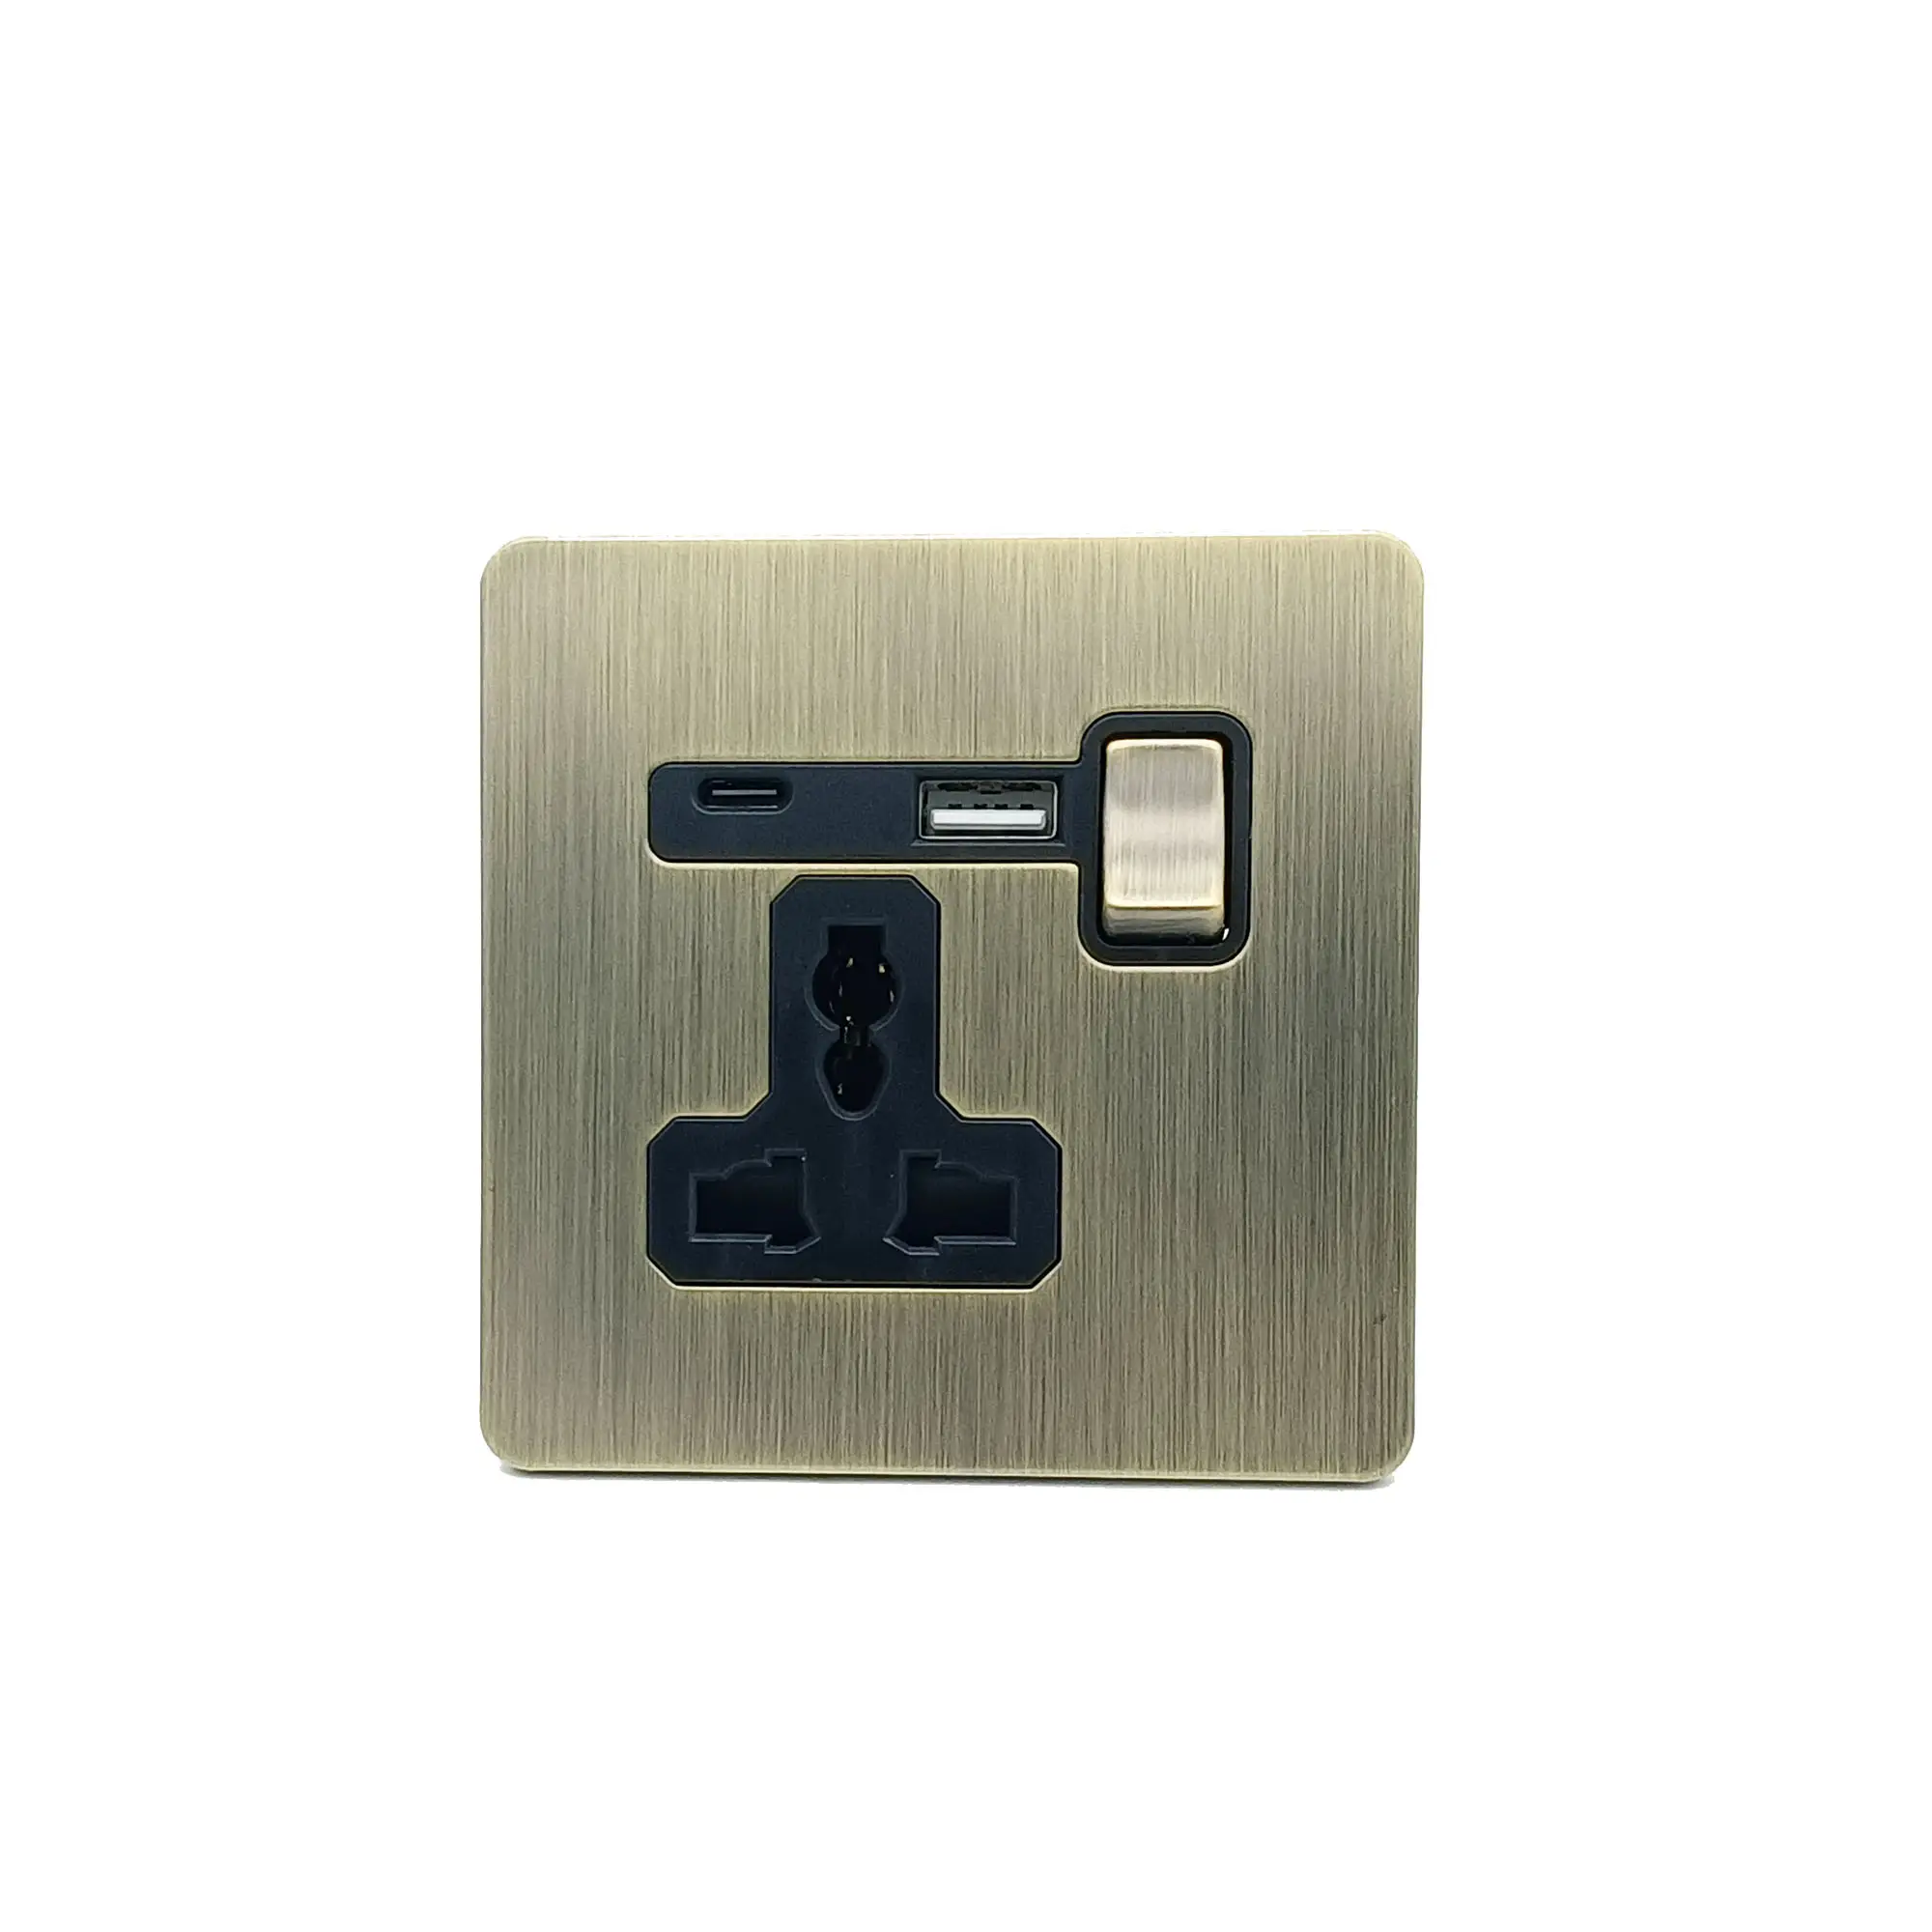 Prise bronzée de Type C, prise commutée en laiton, USB et USB C avec interrupteur marche/arrêt, acier inoxydable, rétro, brossé, interrupteur rétro